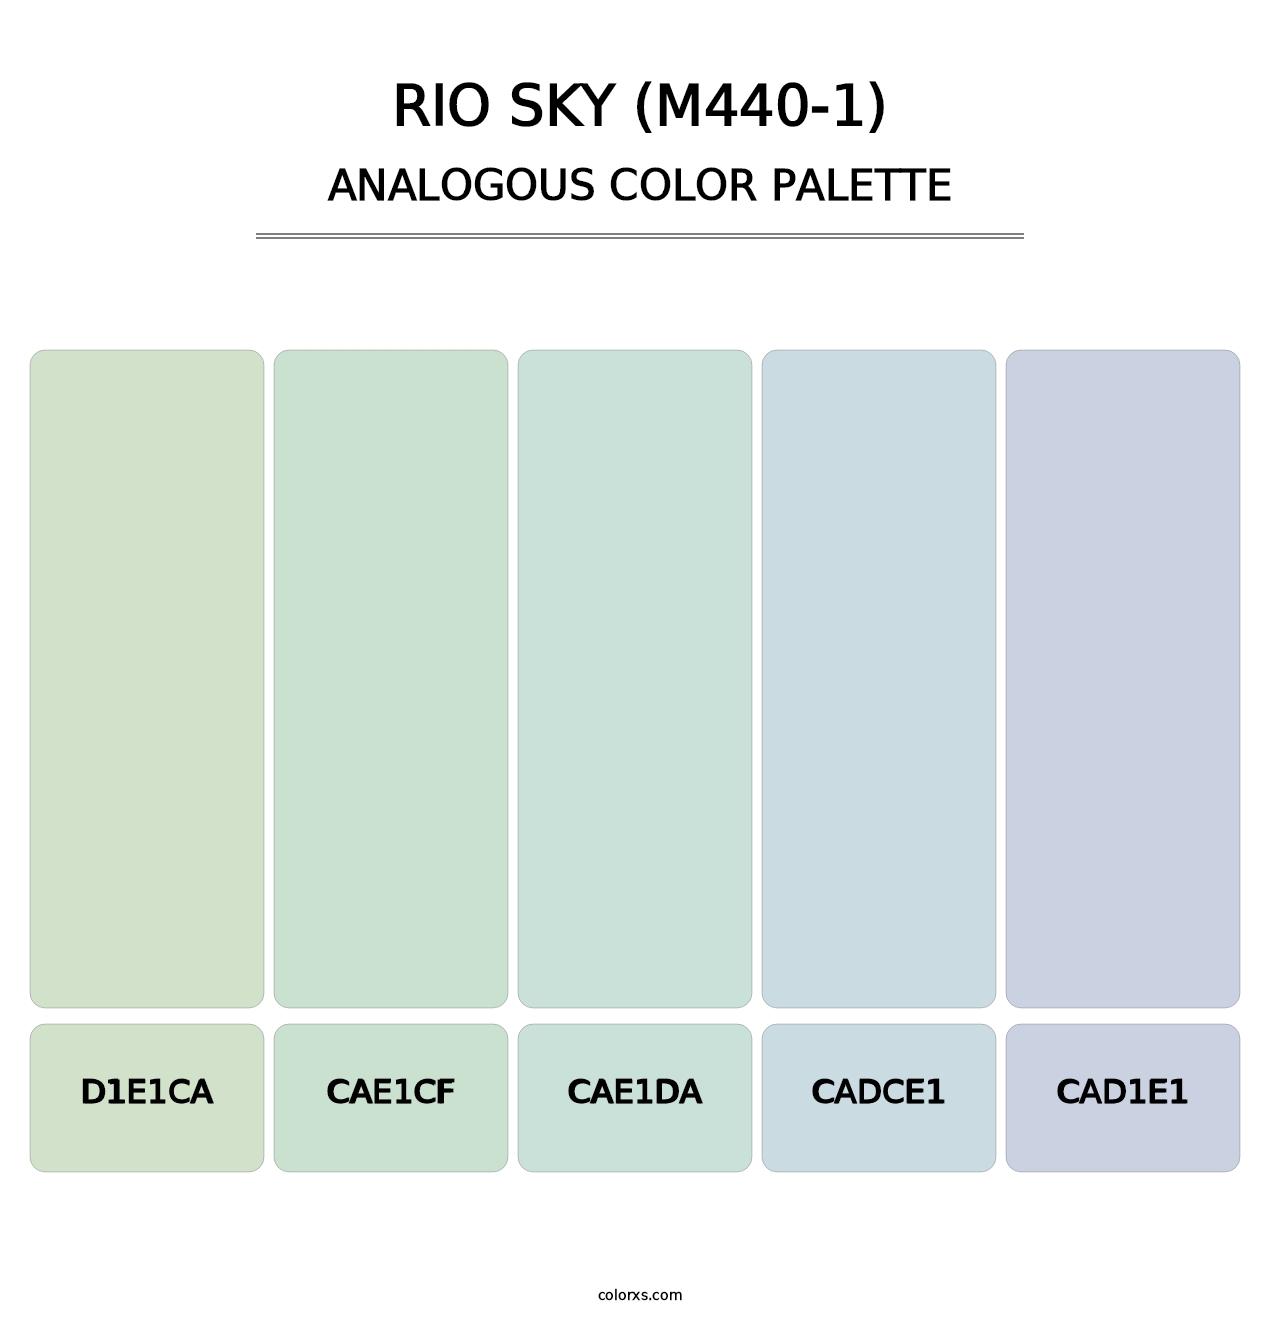 Rio Sky (M440-1) - Analogous Color Palette